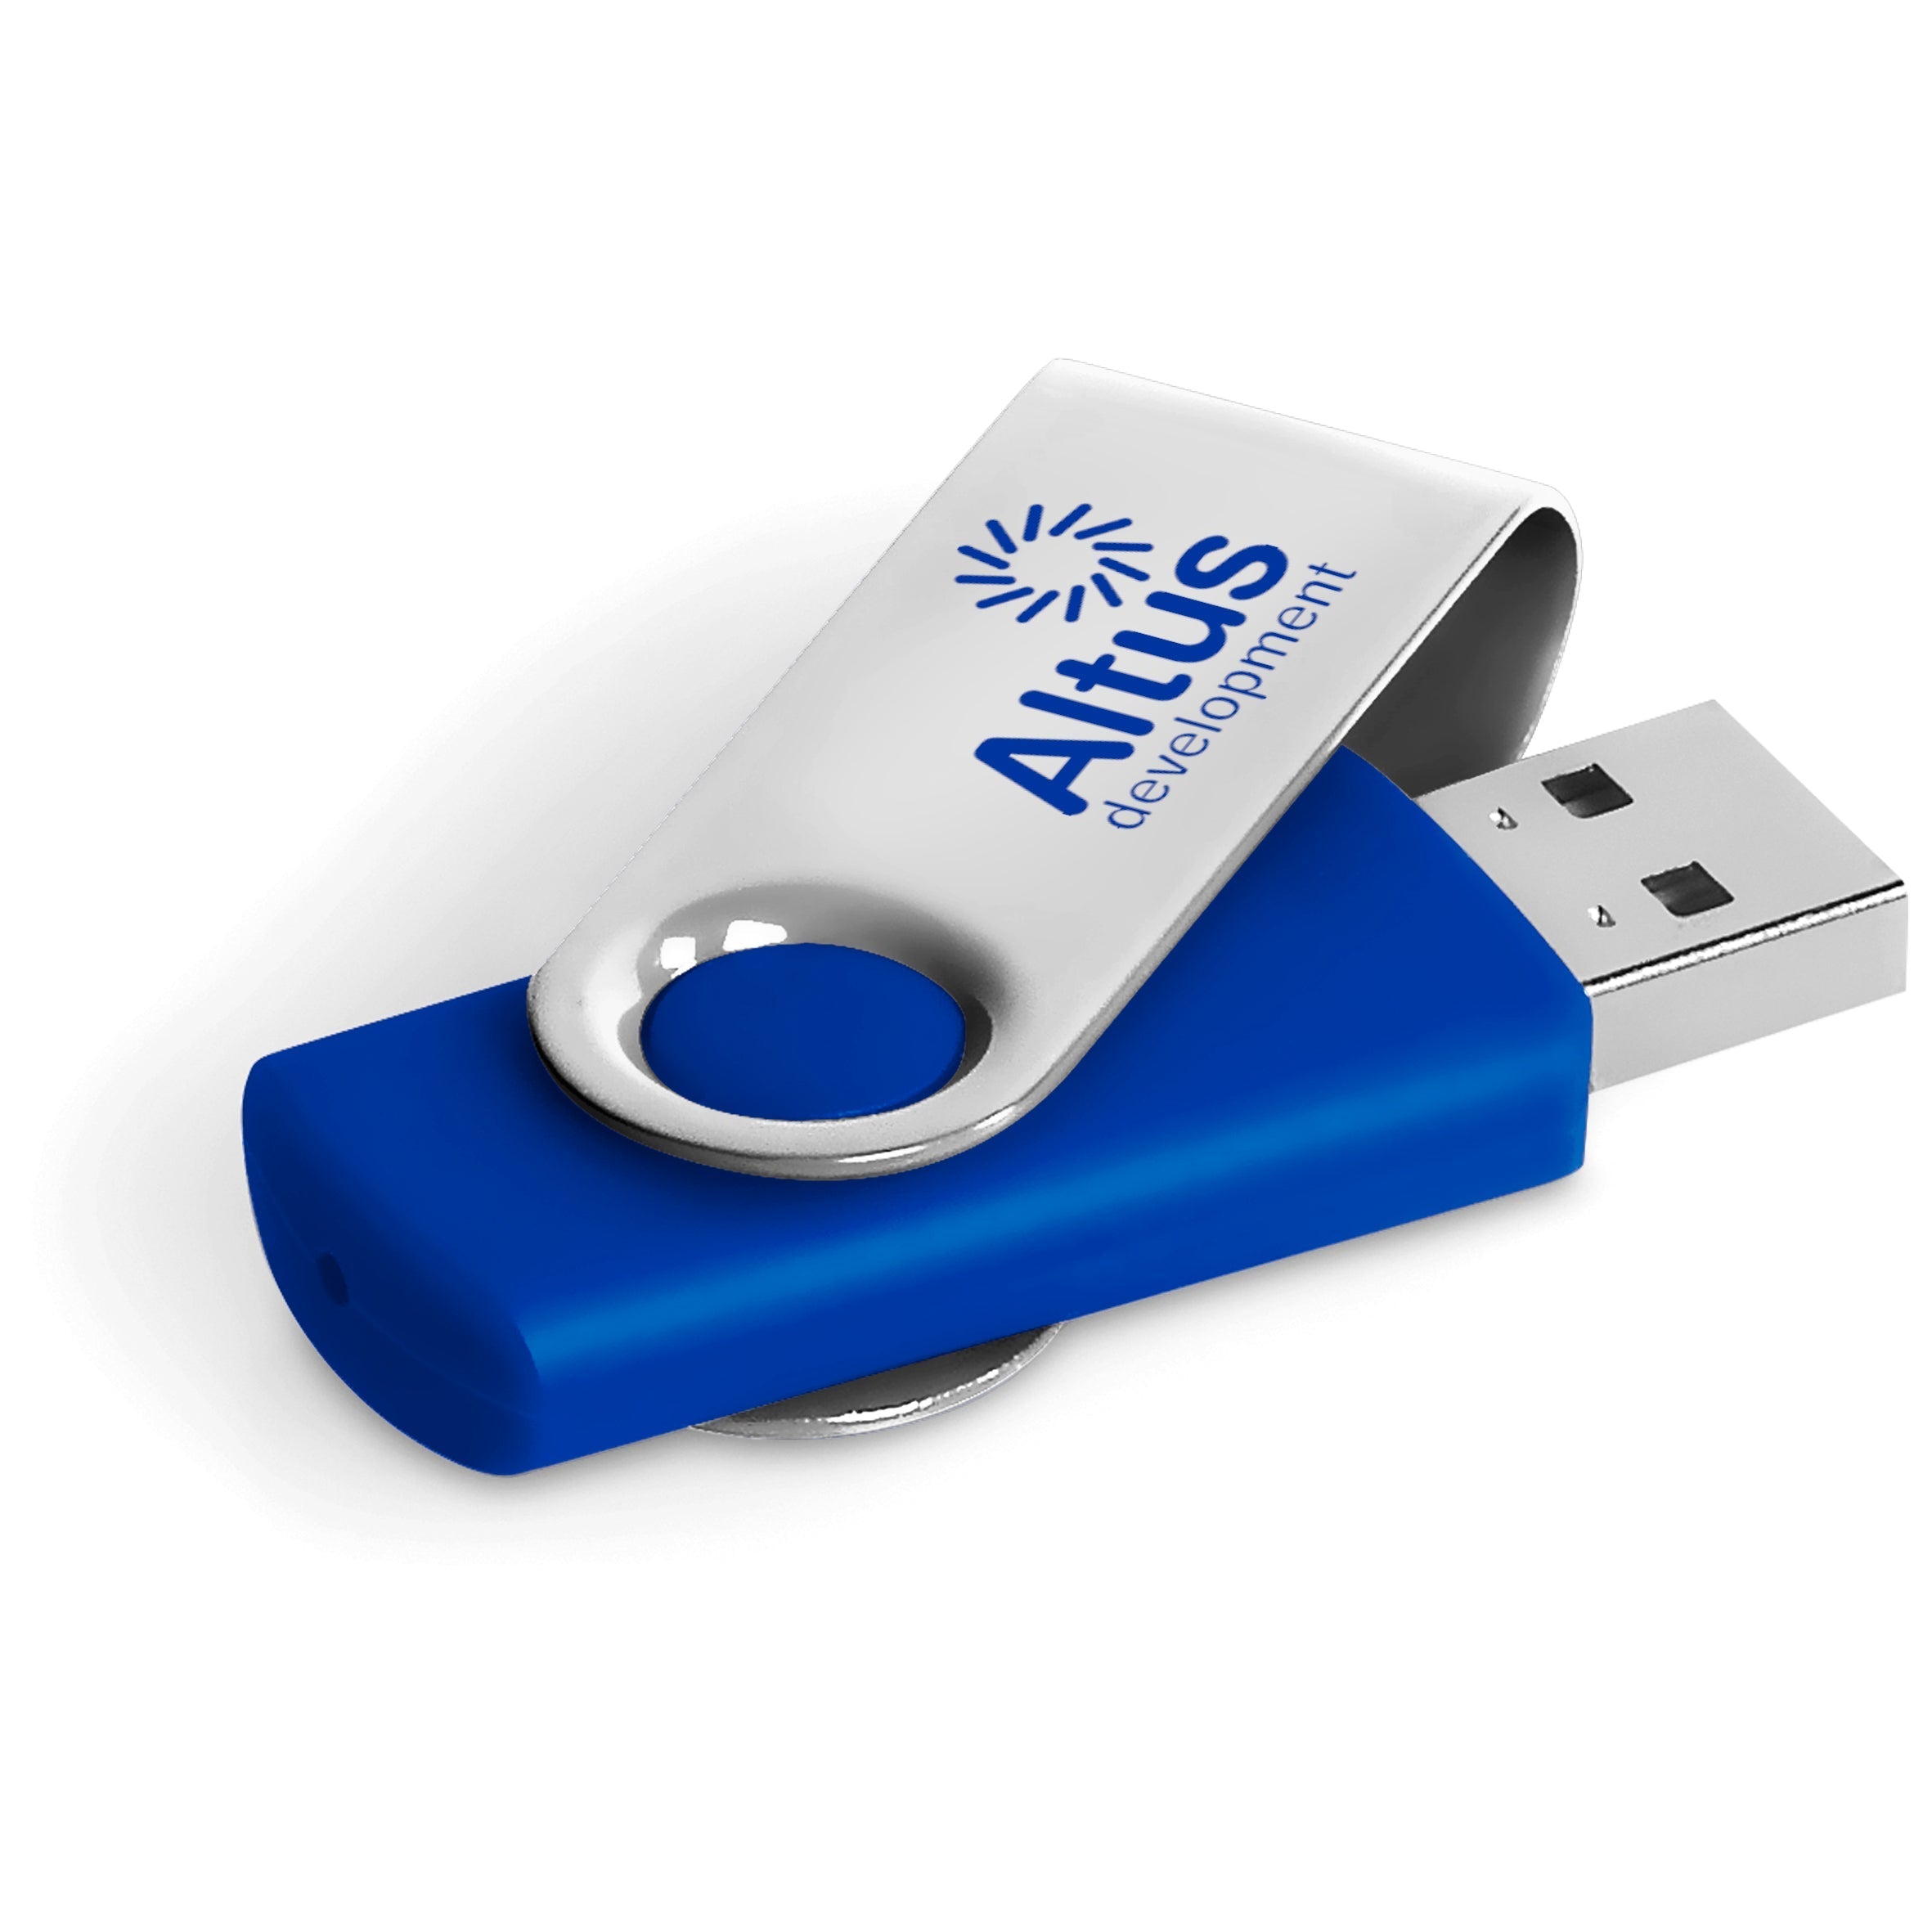 Axis Glint Memory Stick - 8GB-8GB-Blue-BU